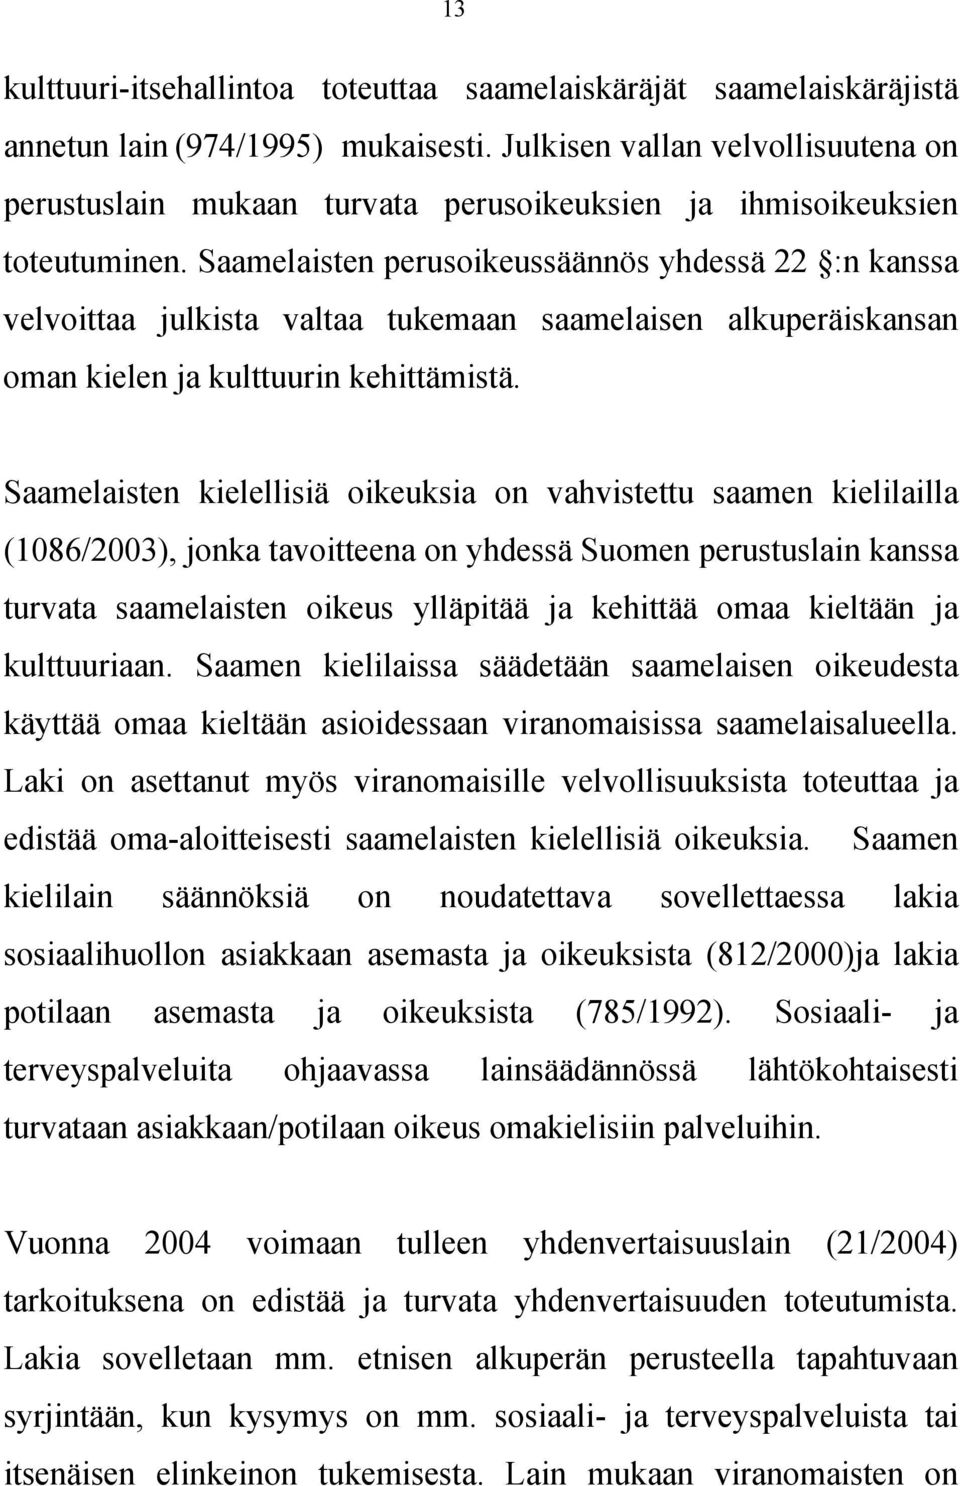 Saamelaisten perusoikeussäännös yhdessä 22 :n kanssa velvoittaa julkista valtaa tukemaan saamelaisen alkuperäiskansan oman kielen ja kulttuurin kehittämistä.